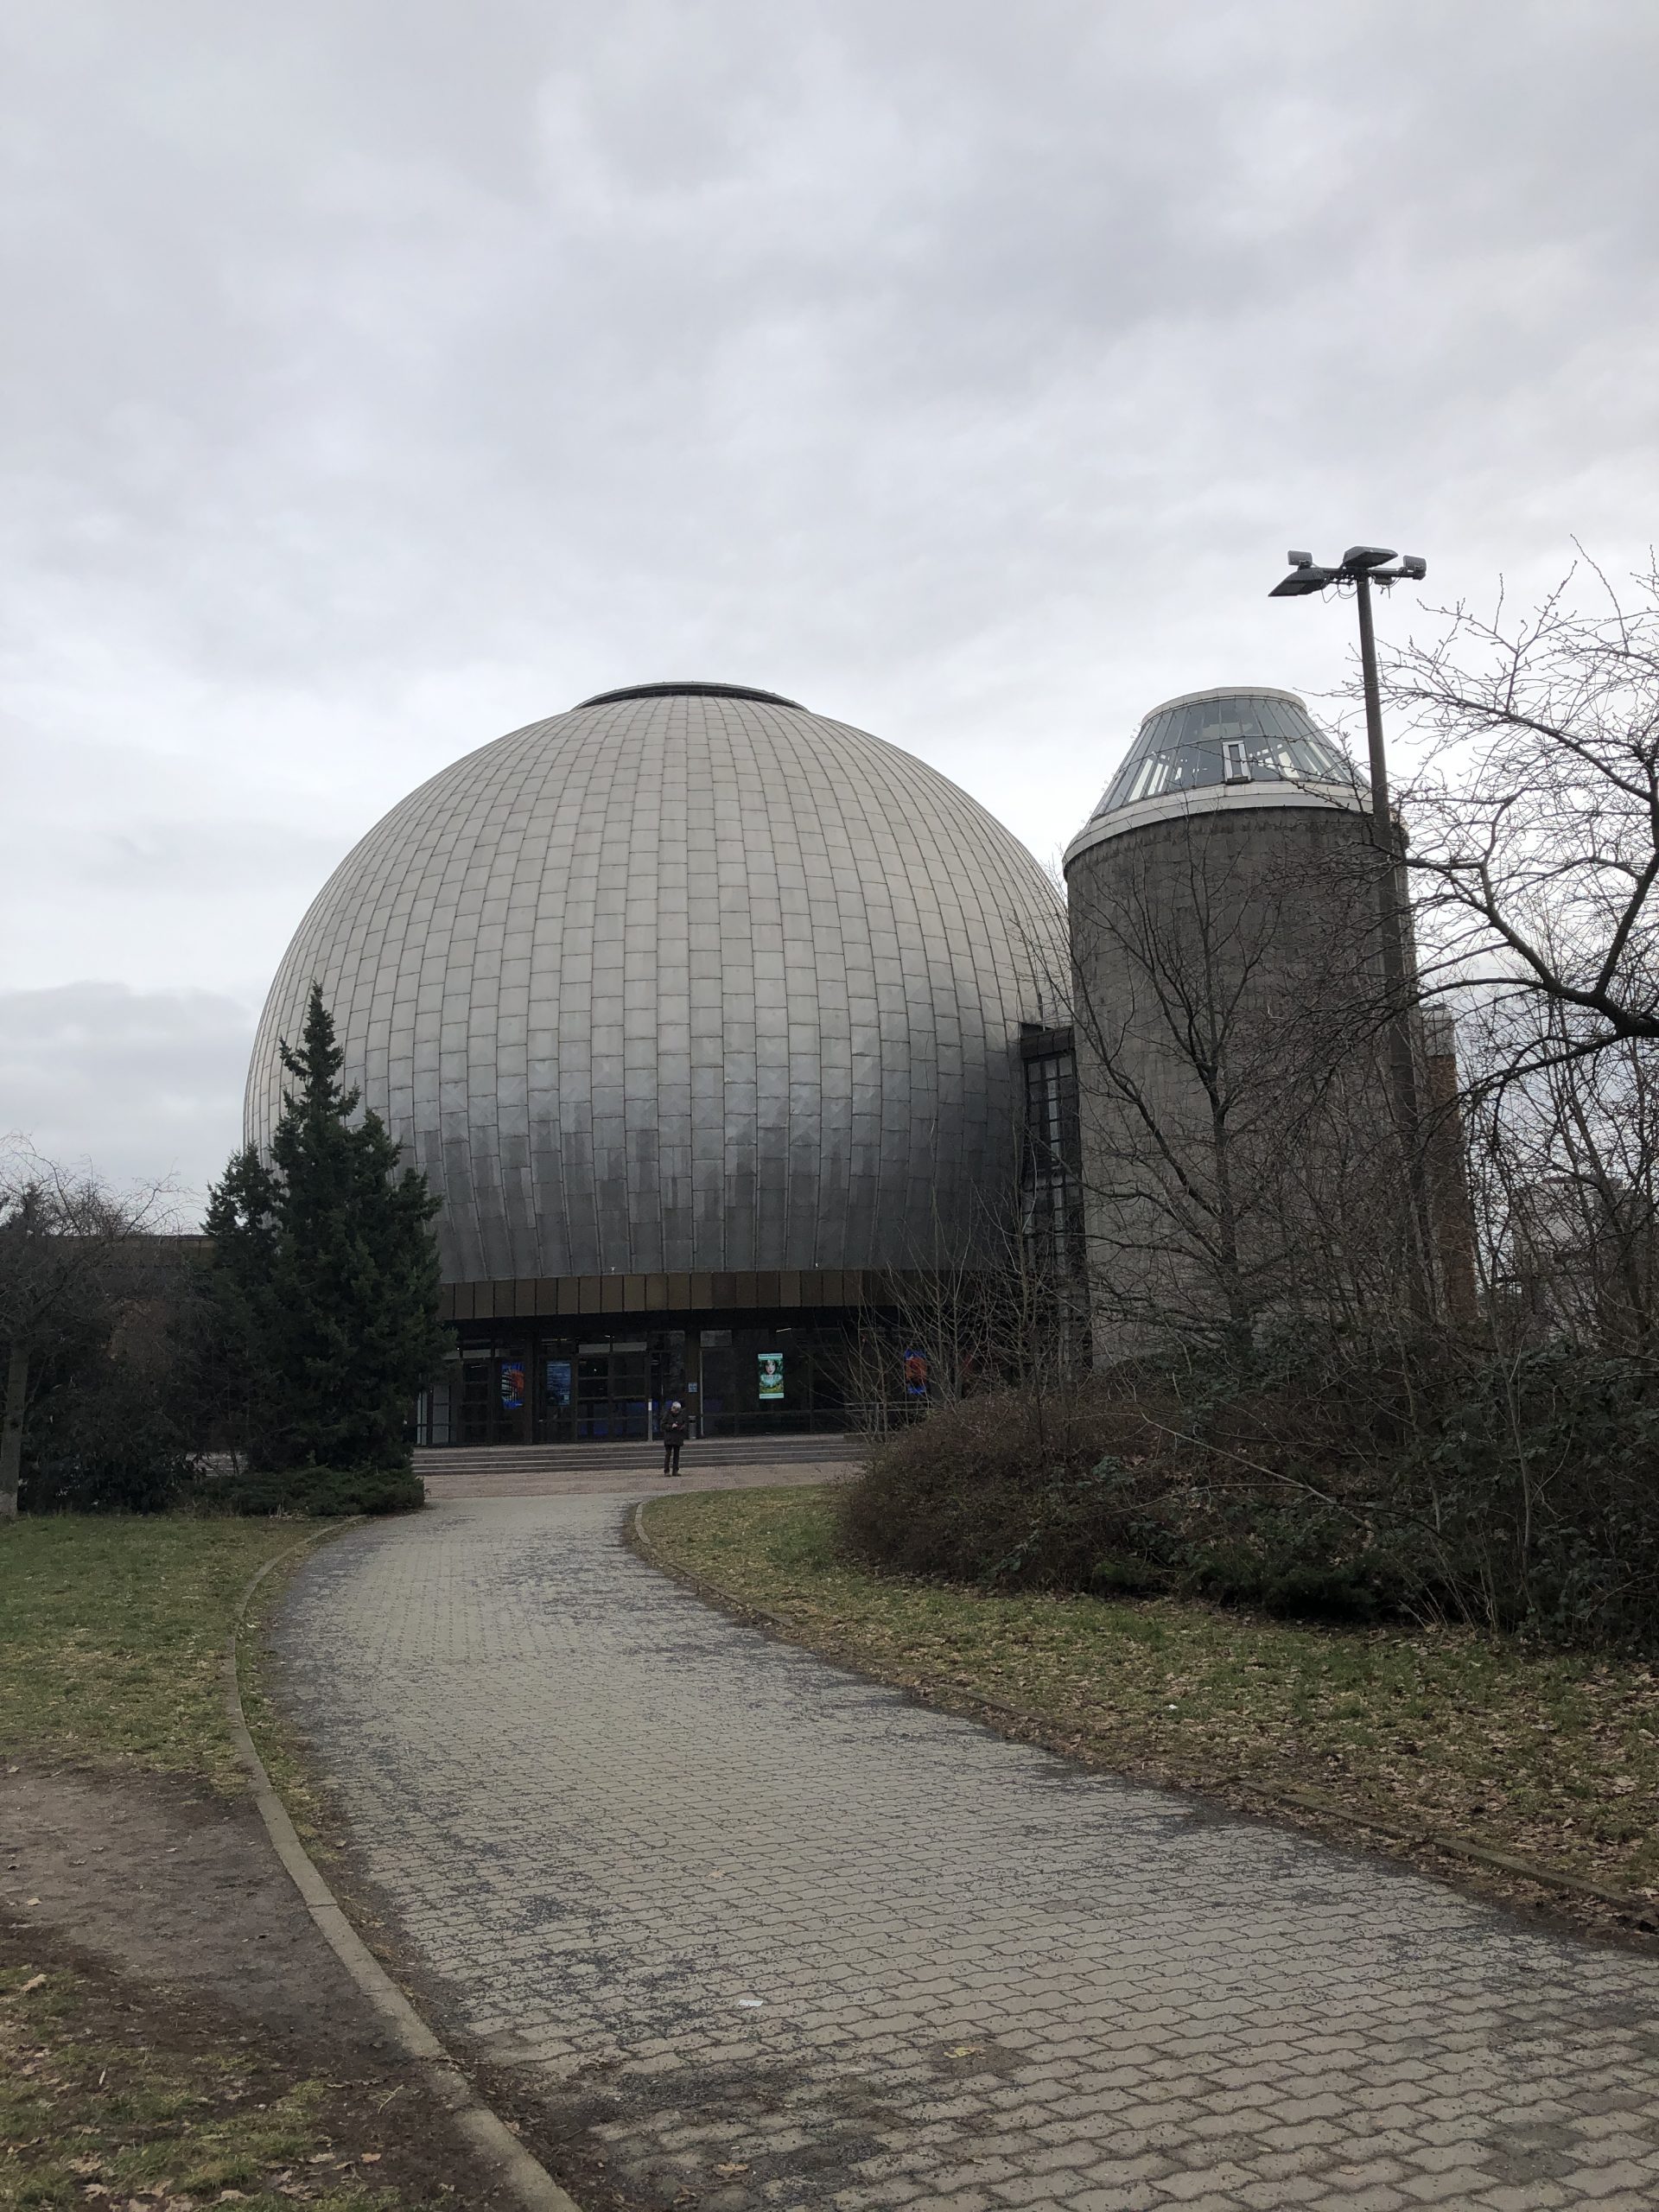 Besuch Zeiss-Planetarium